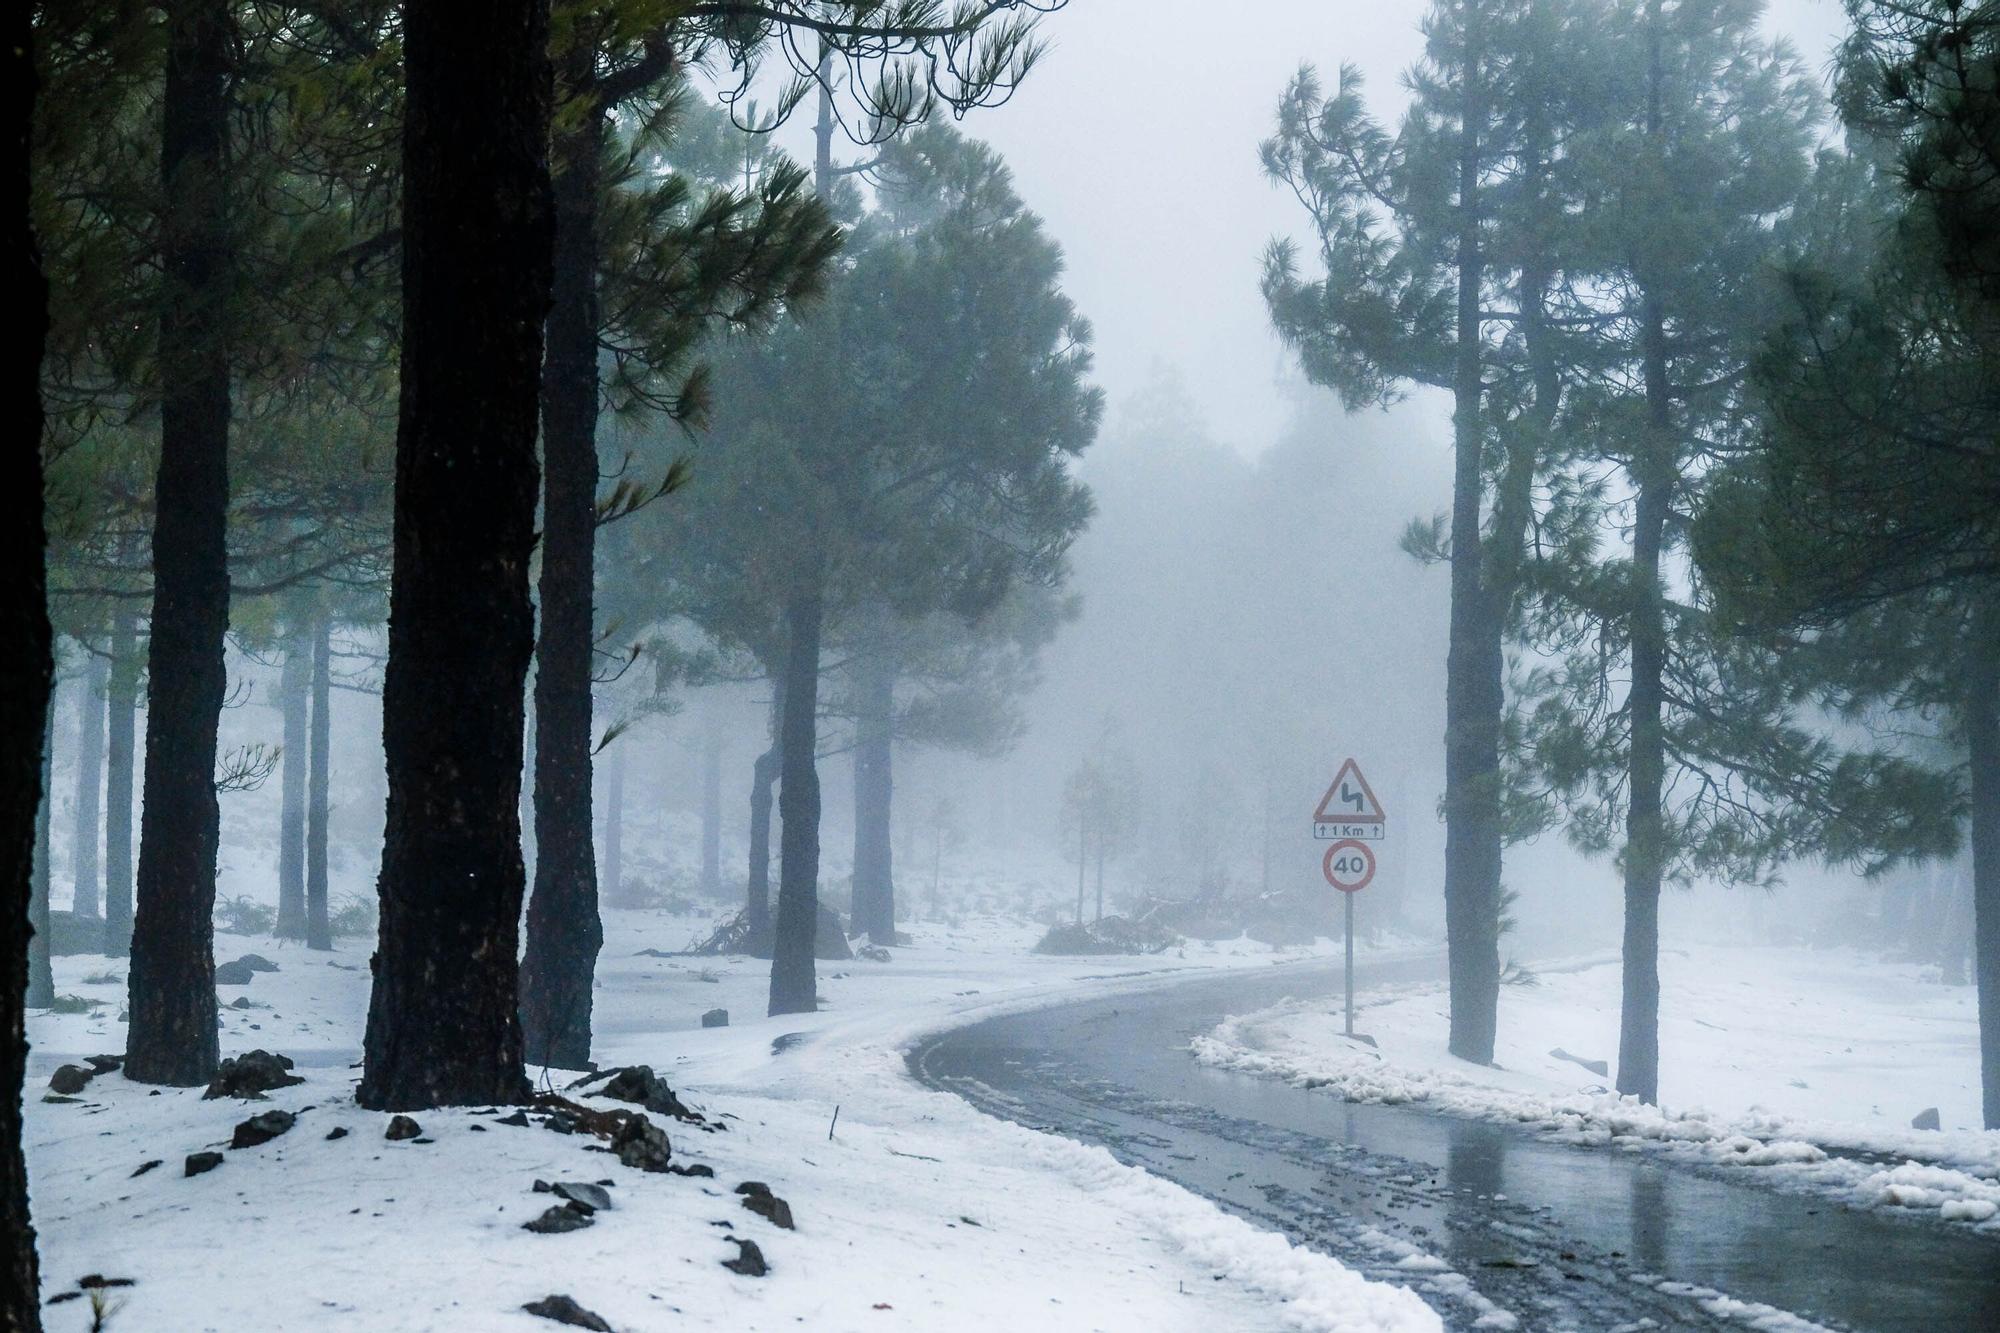 Nieve en la cumbre de Gran Canaria (15/03/2022)